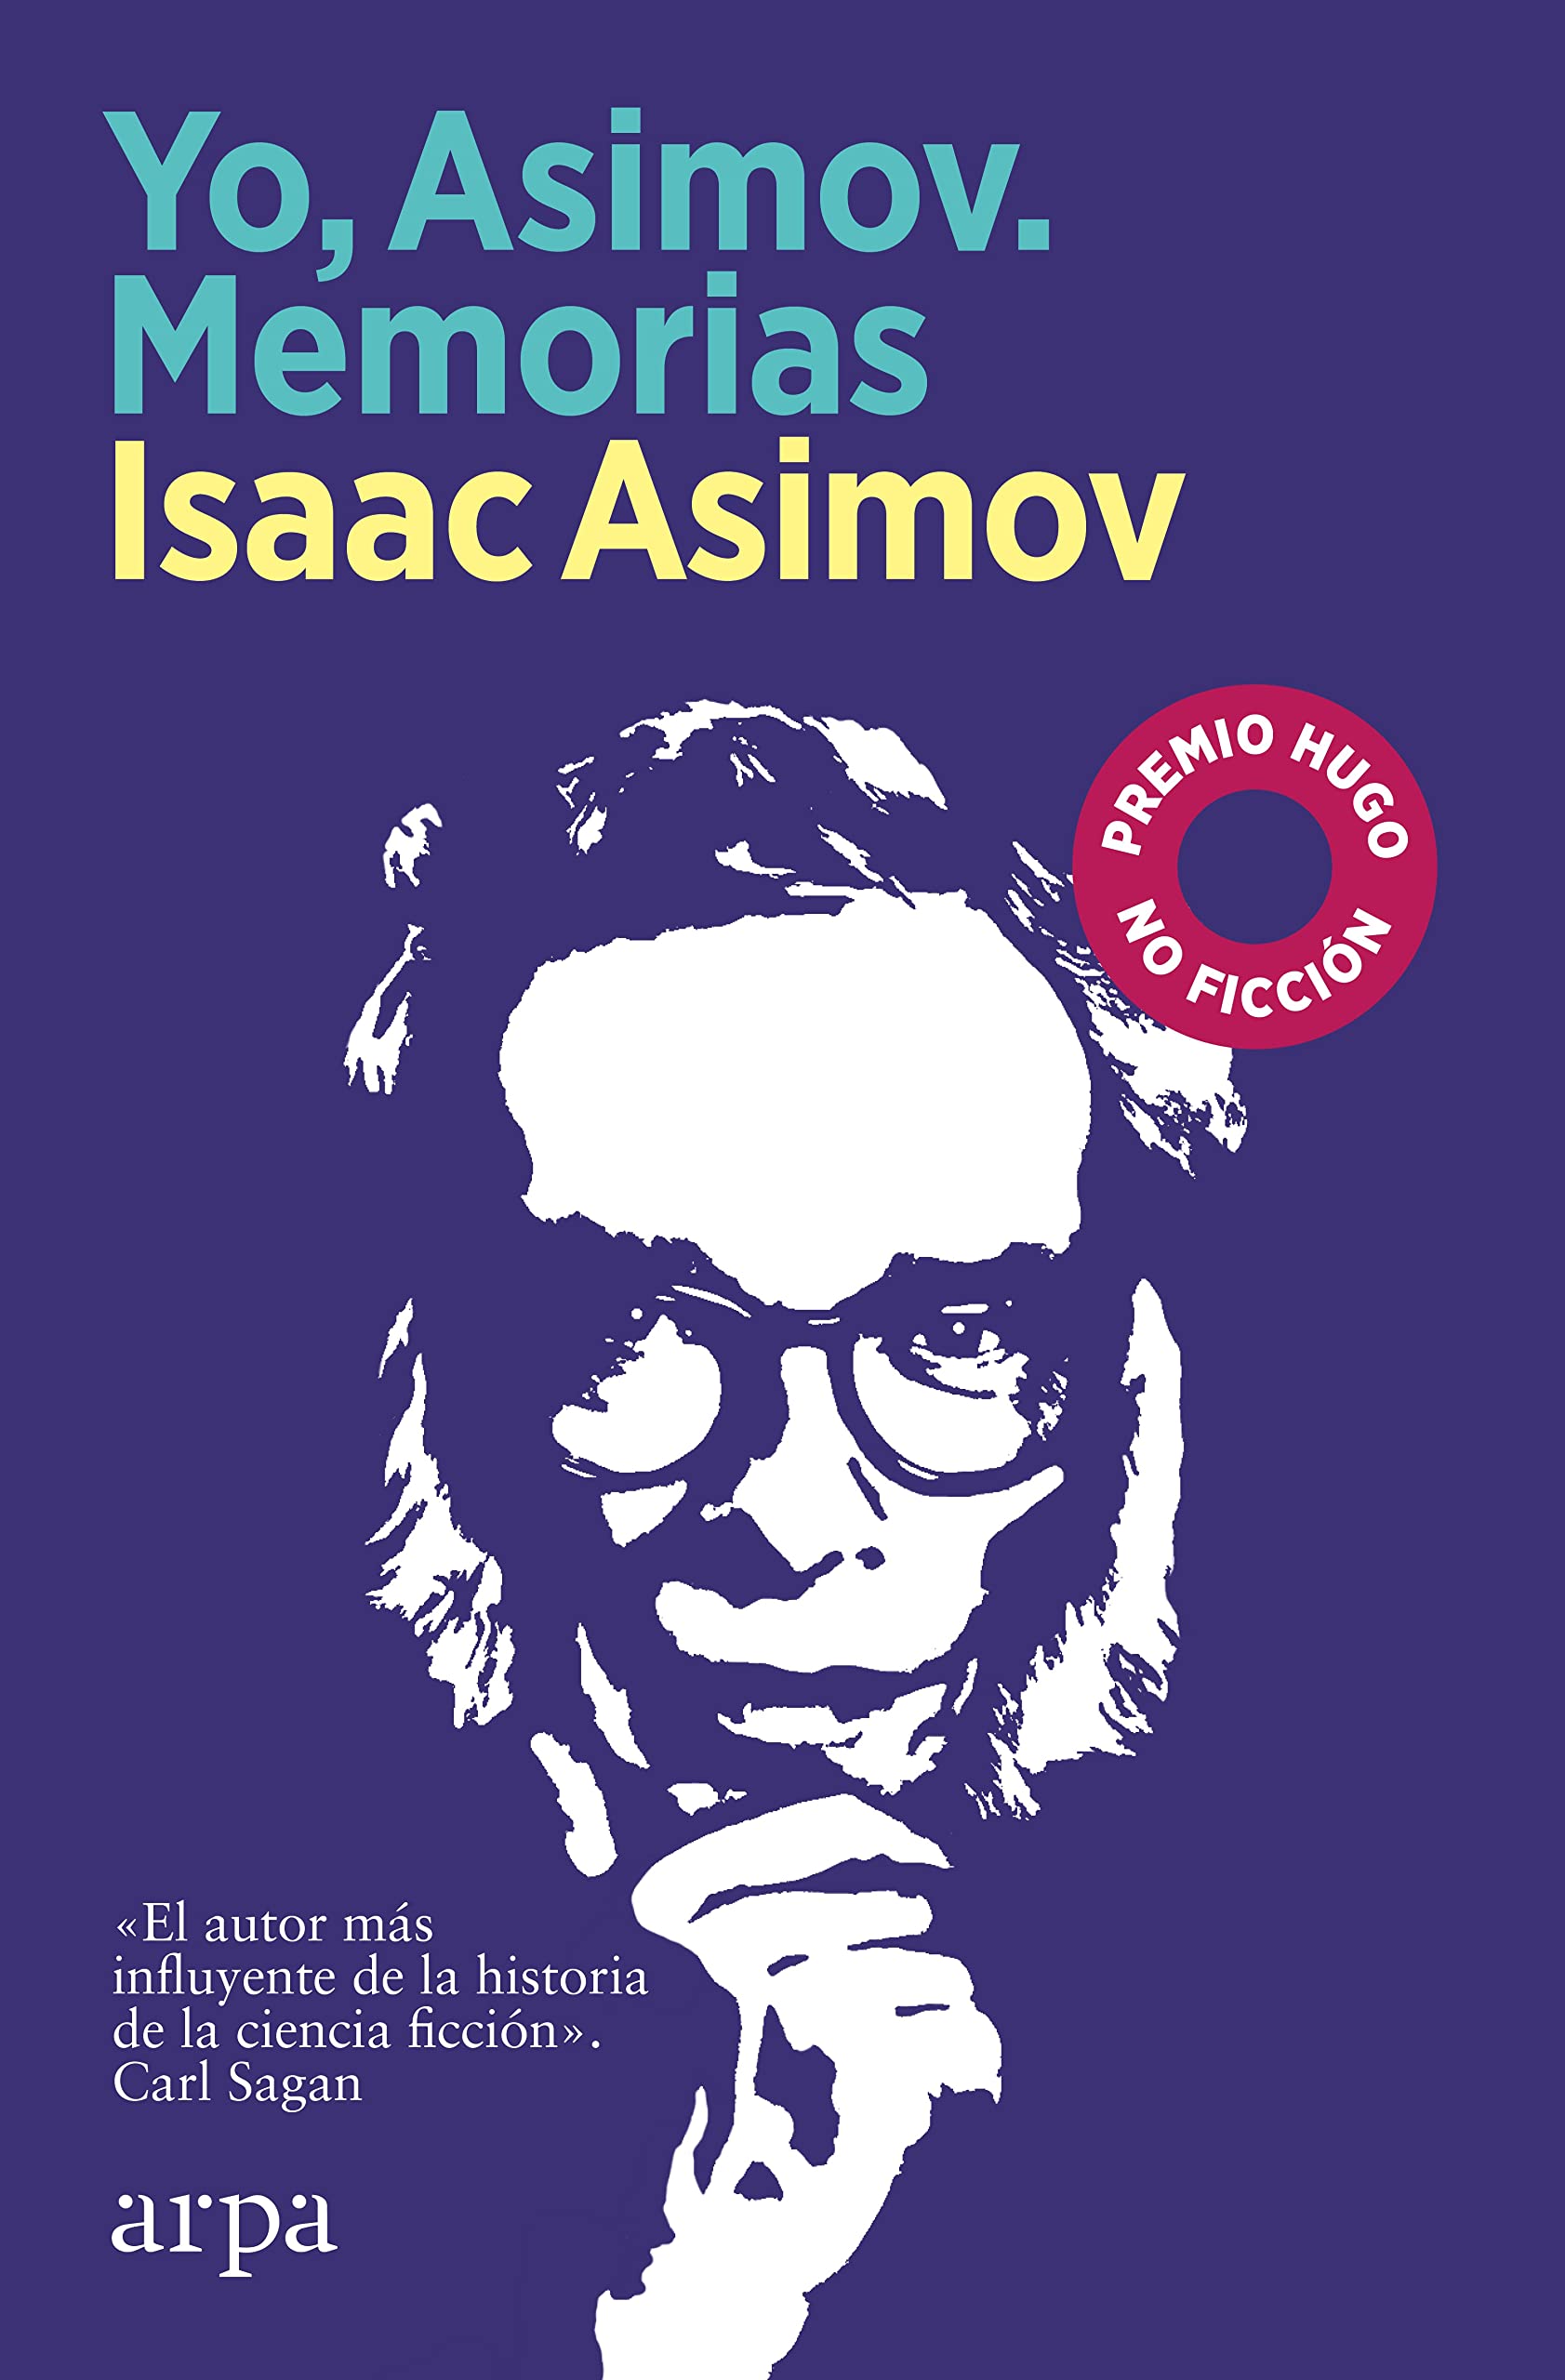 Zenda recomienda: Yo, Asimov. Memorias, de Isaac Asimov